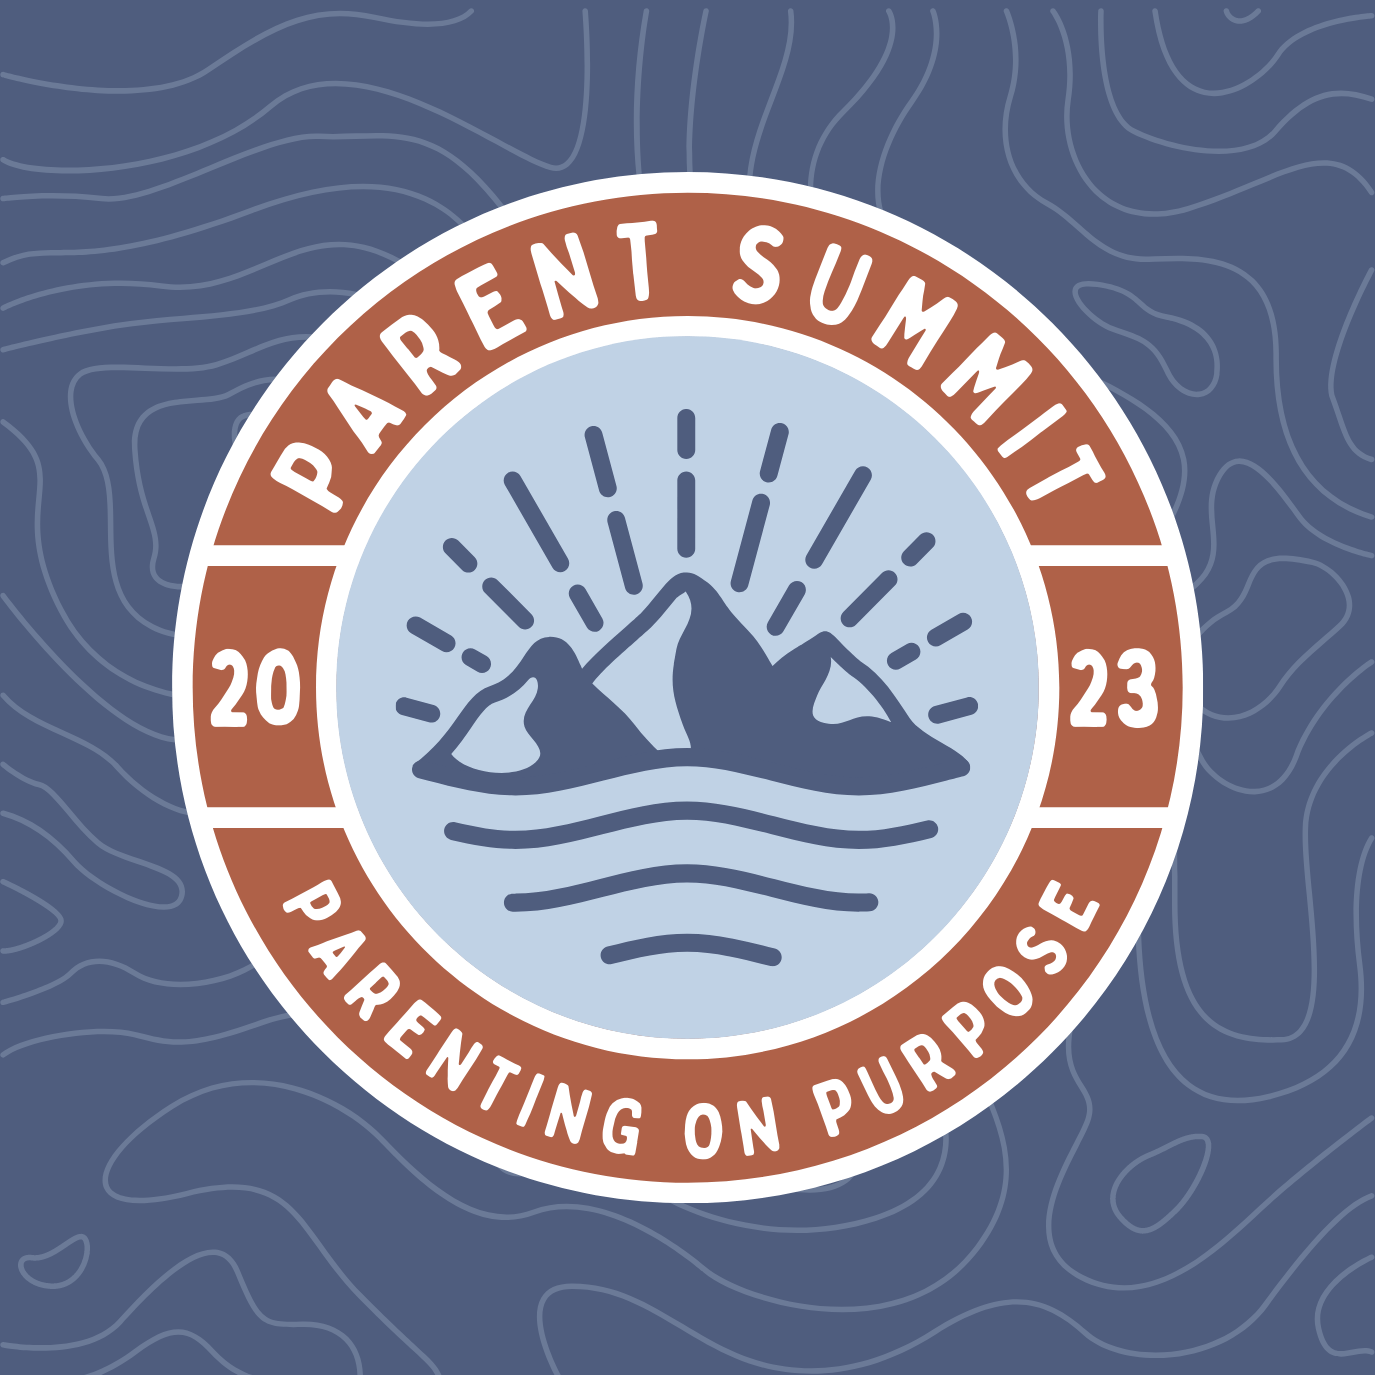 Parent Summit 2023 - Parenting on Purpose